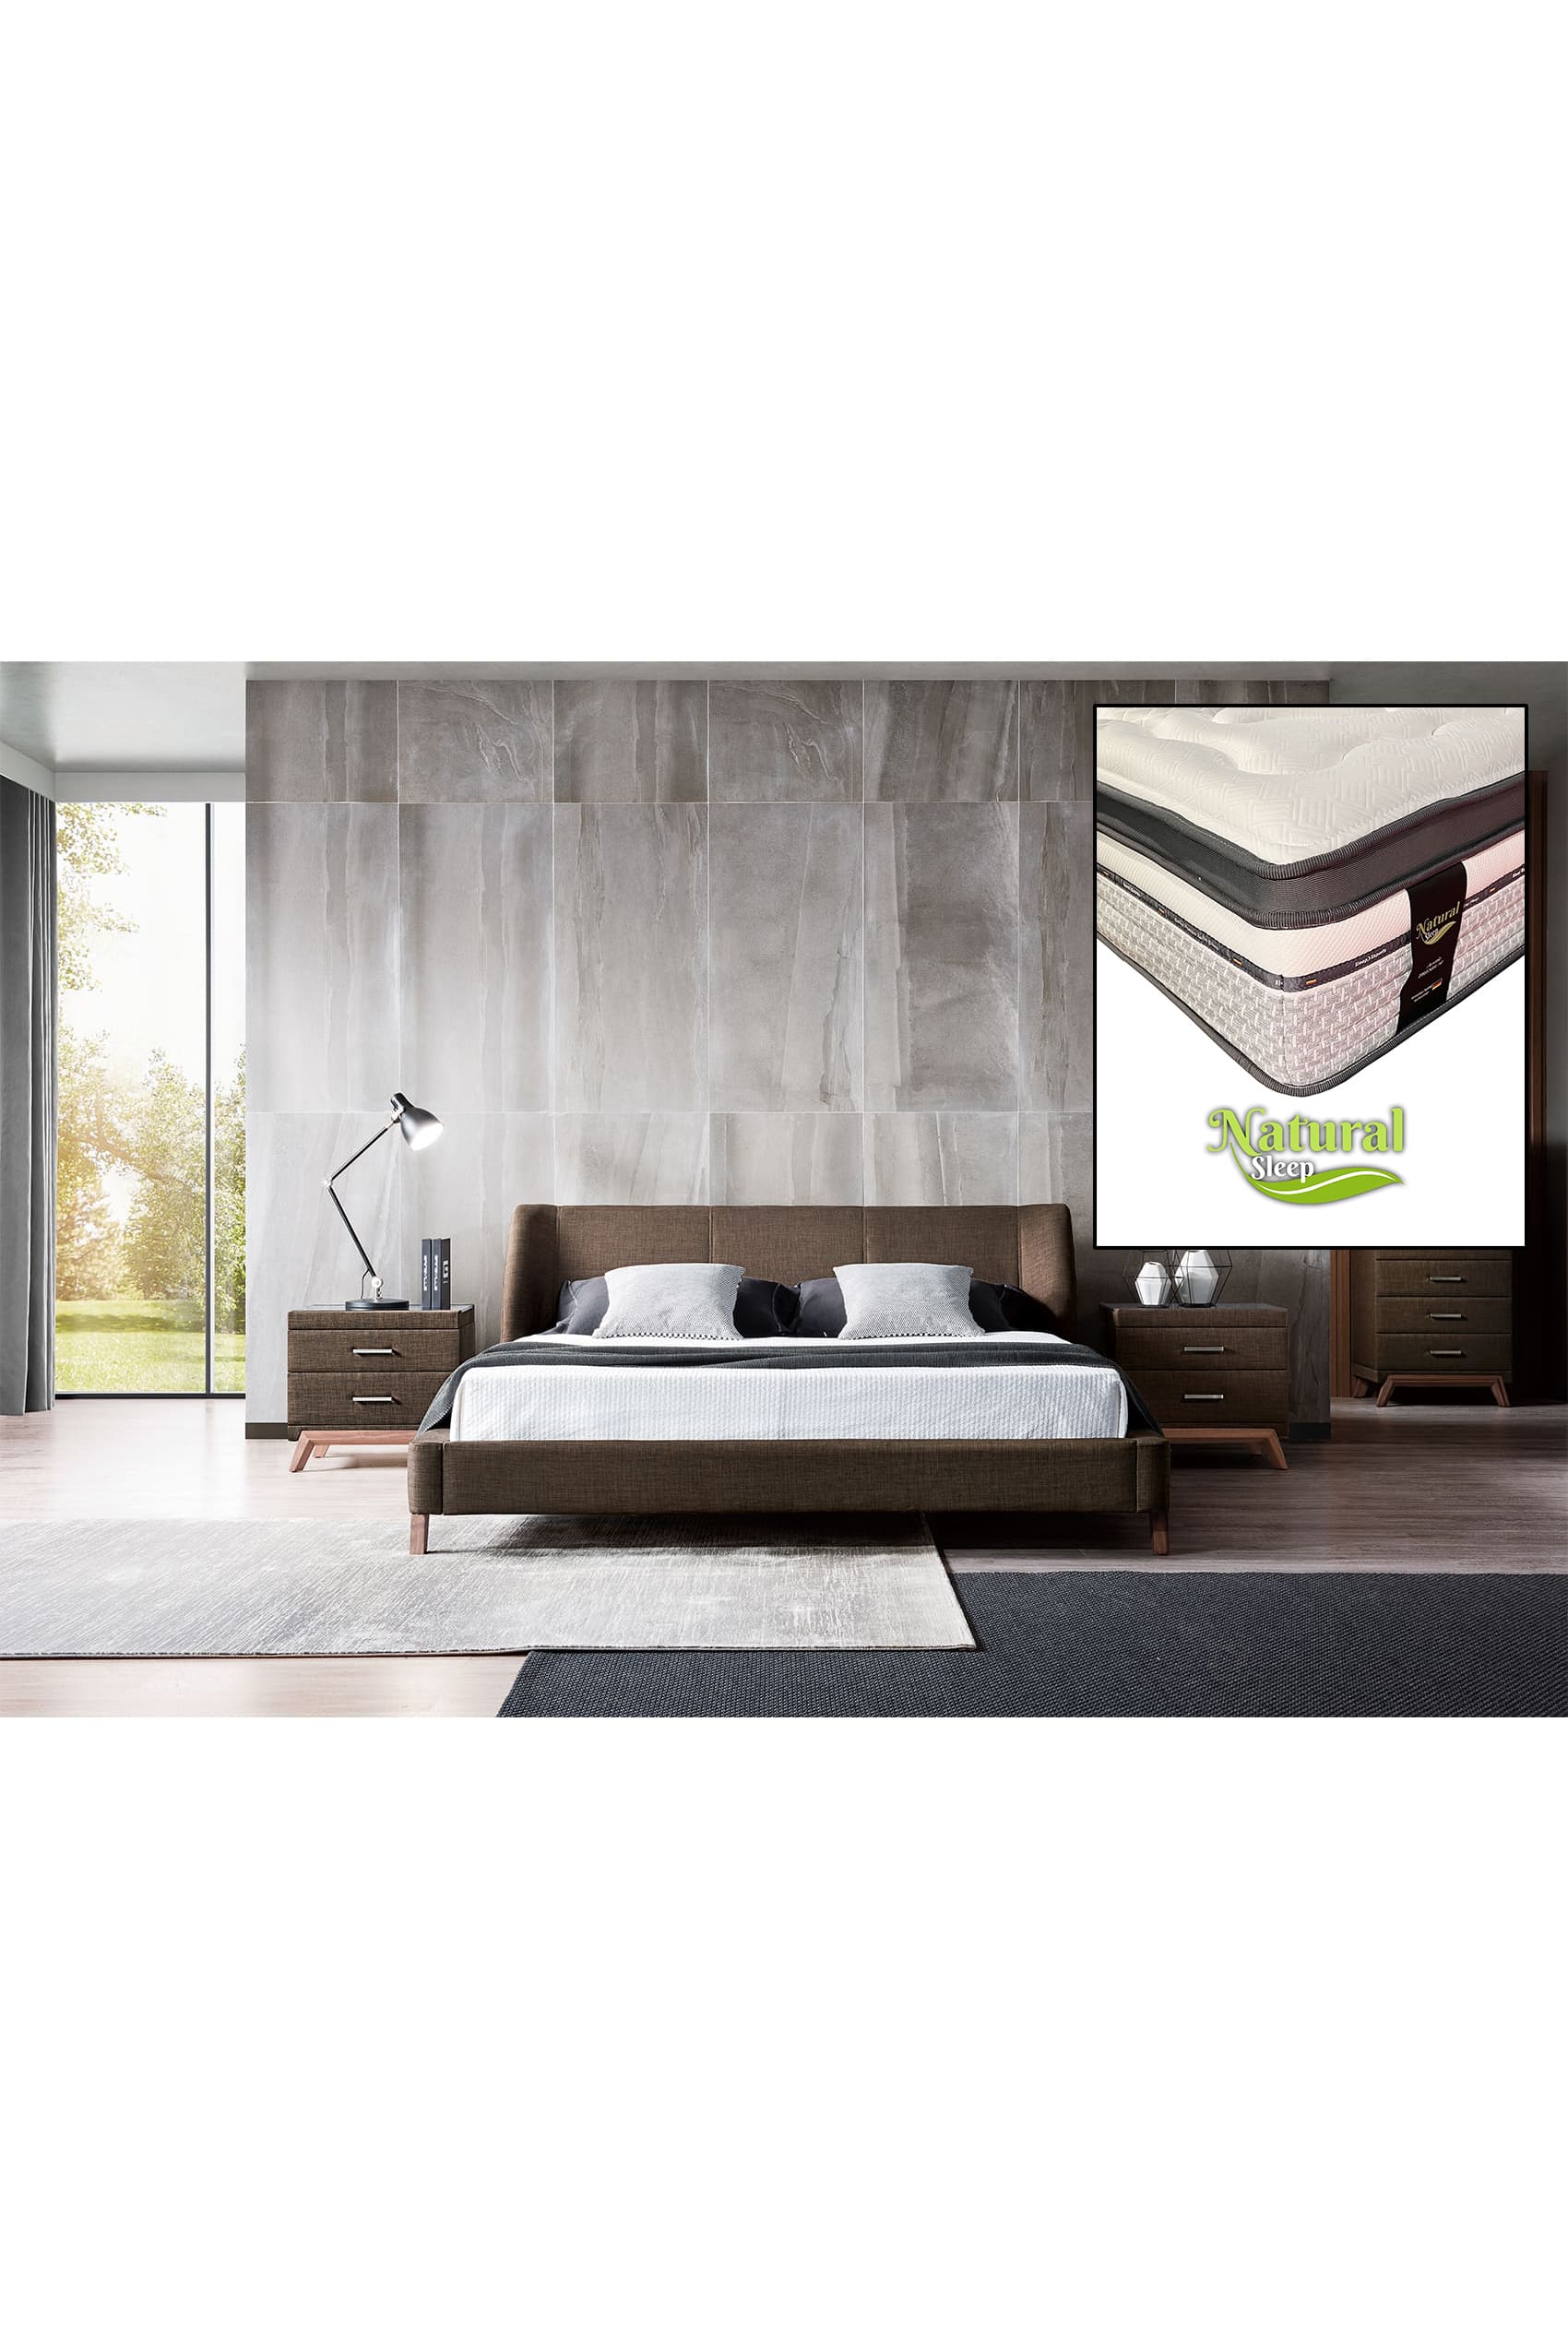 Ander Designer Bed Frame + Natural Sleep Arctic